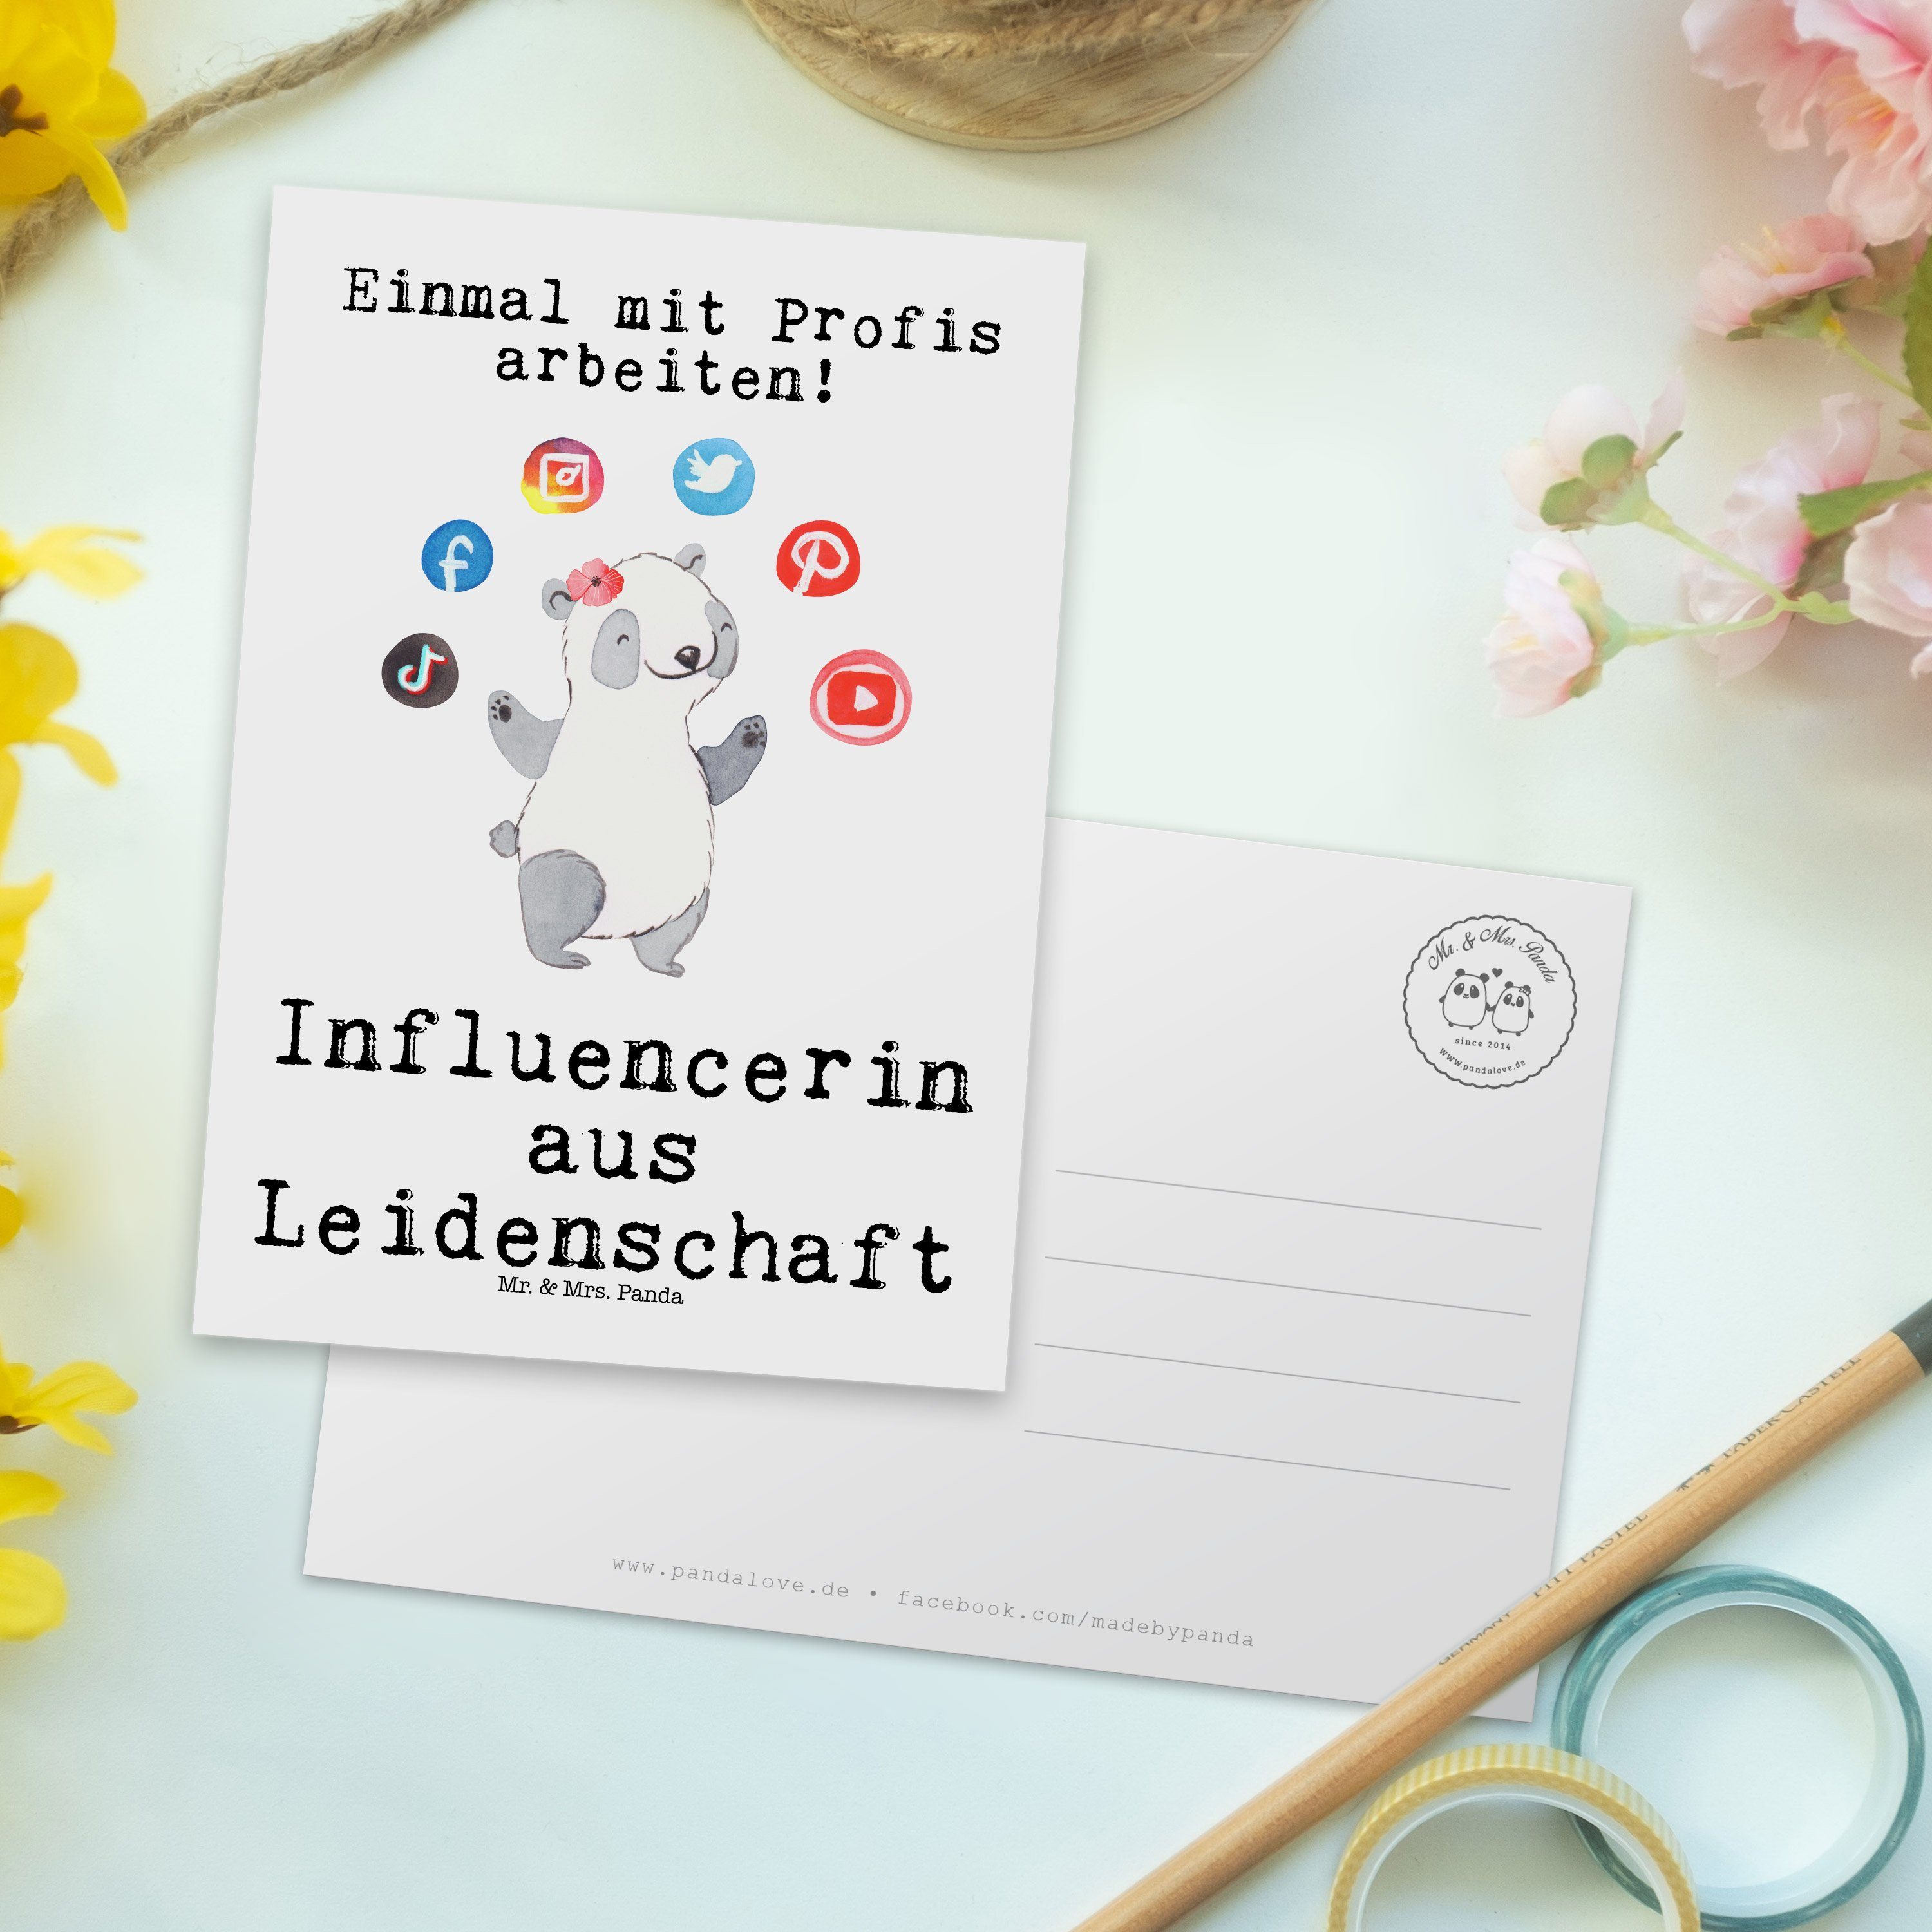 Mrs. Leidenschaft Schenken - & Geschenk, Weiß Einladung, Panda - aus Postkarte Influencerin Mr.